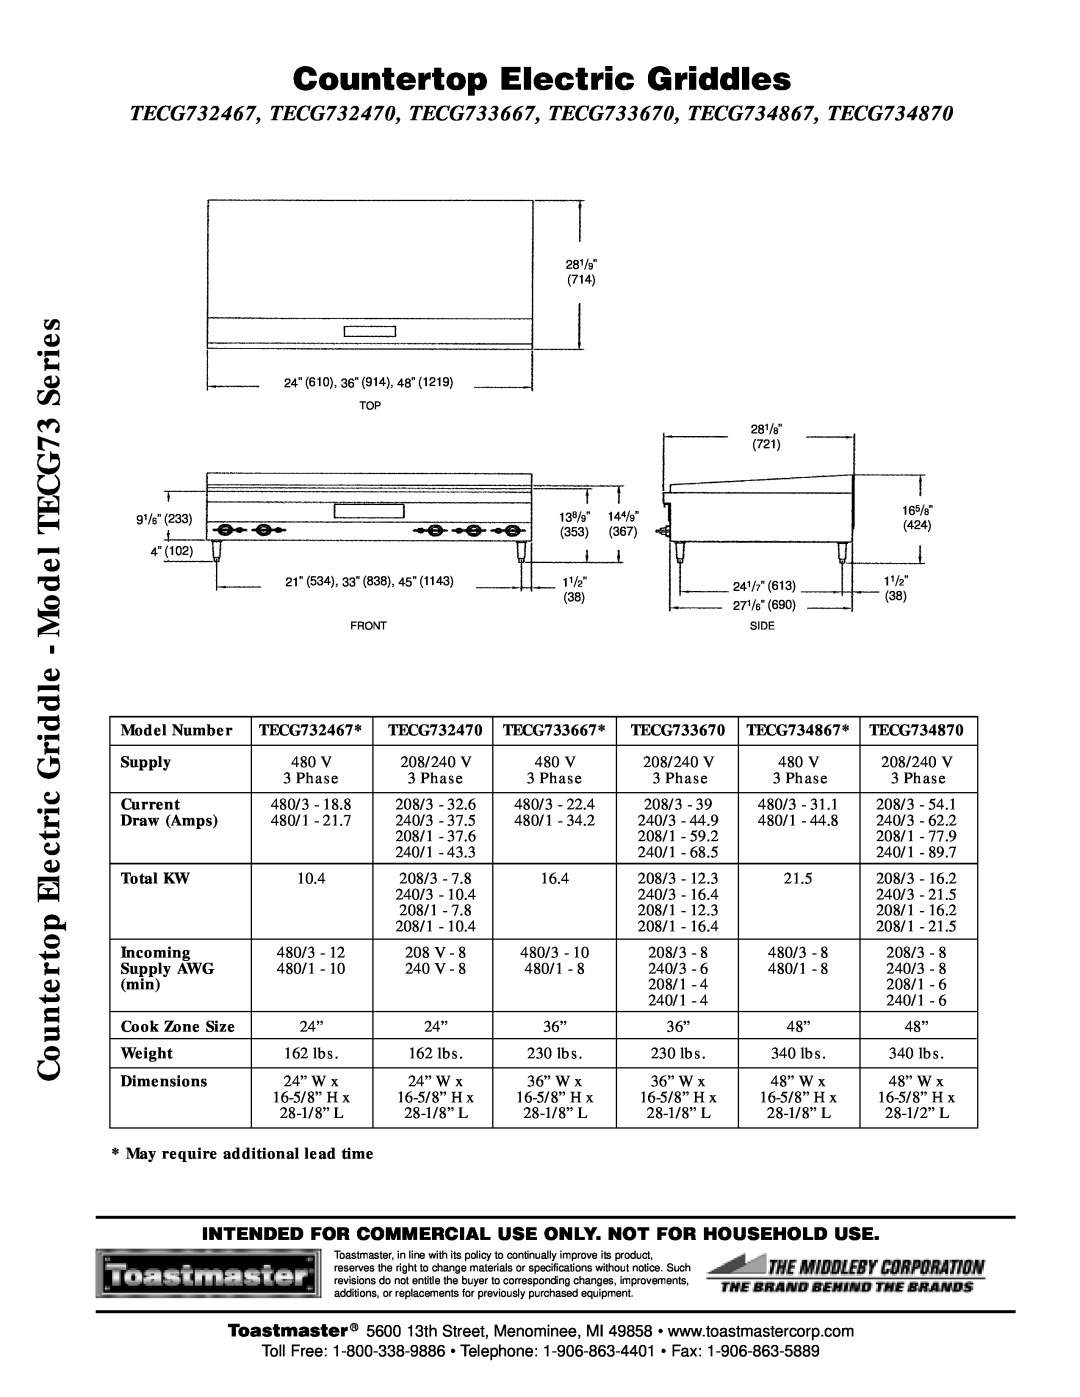 Toastmaster TECG734870, TECG733670 warranty Countertop Electric Griddles, Countertop Electric Griddle - Model TECG73 Series 